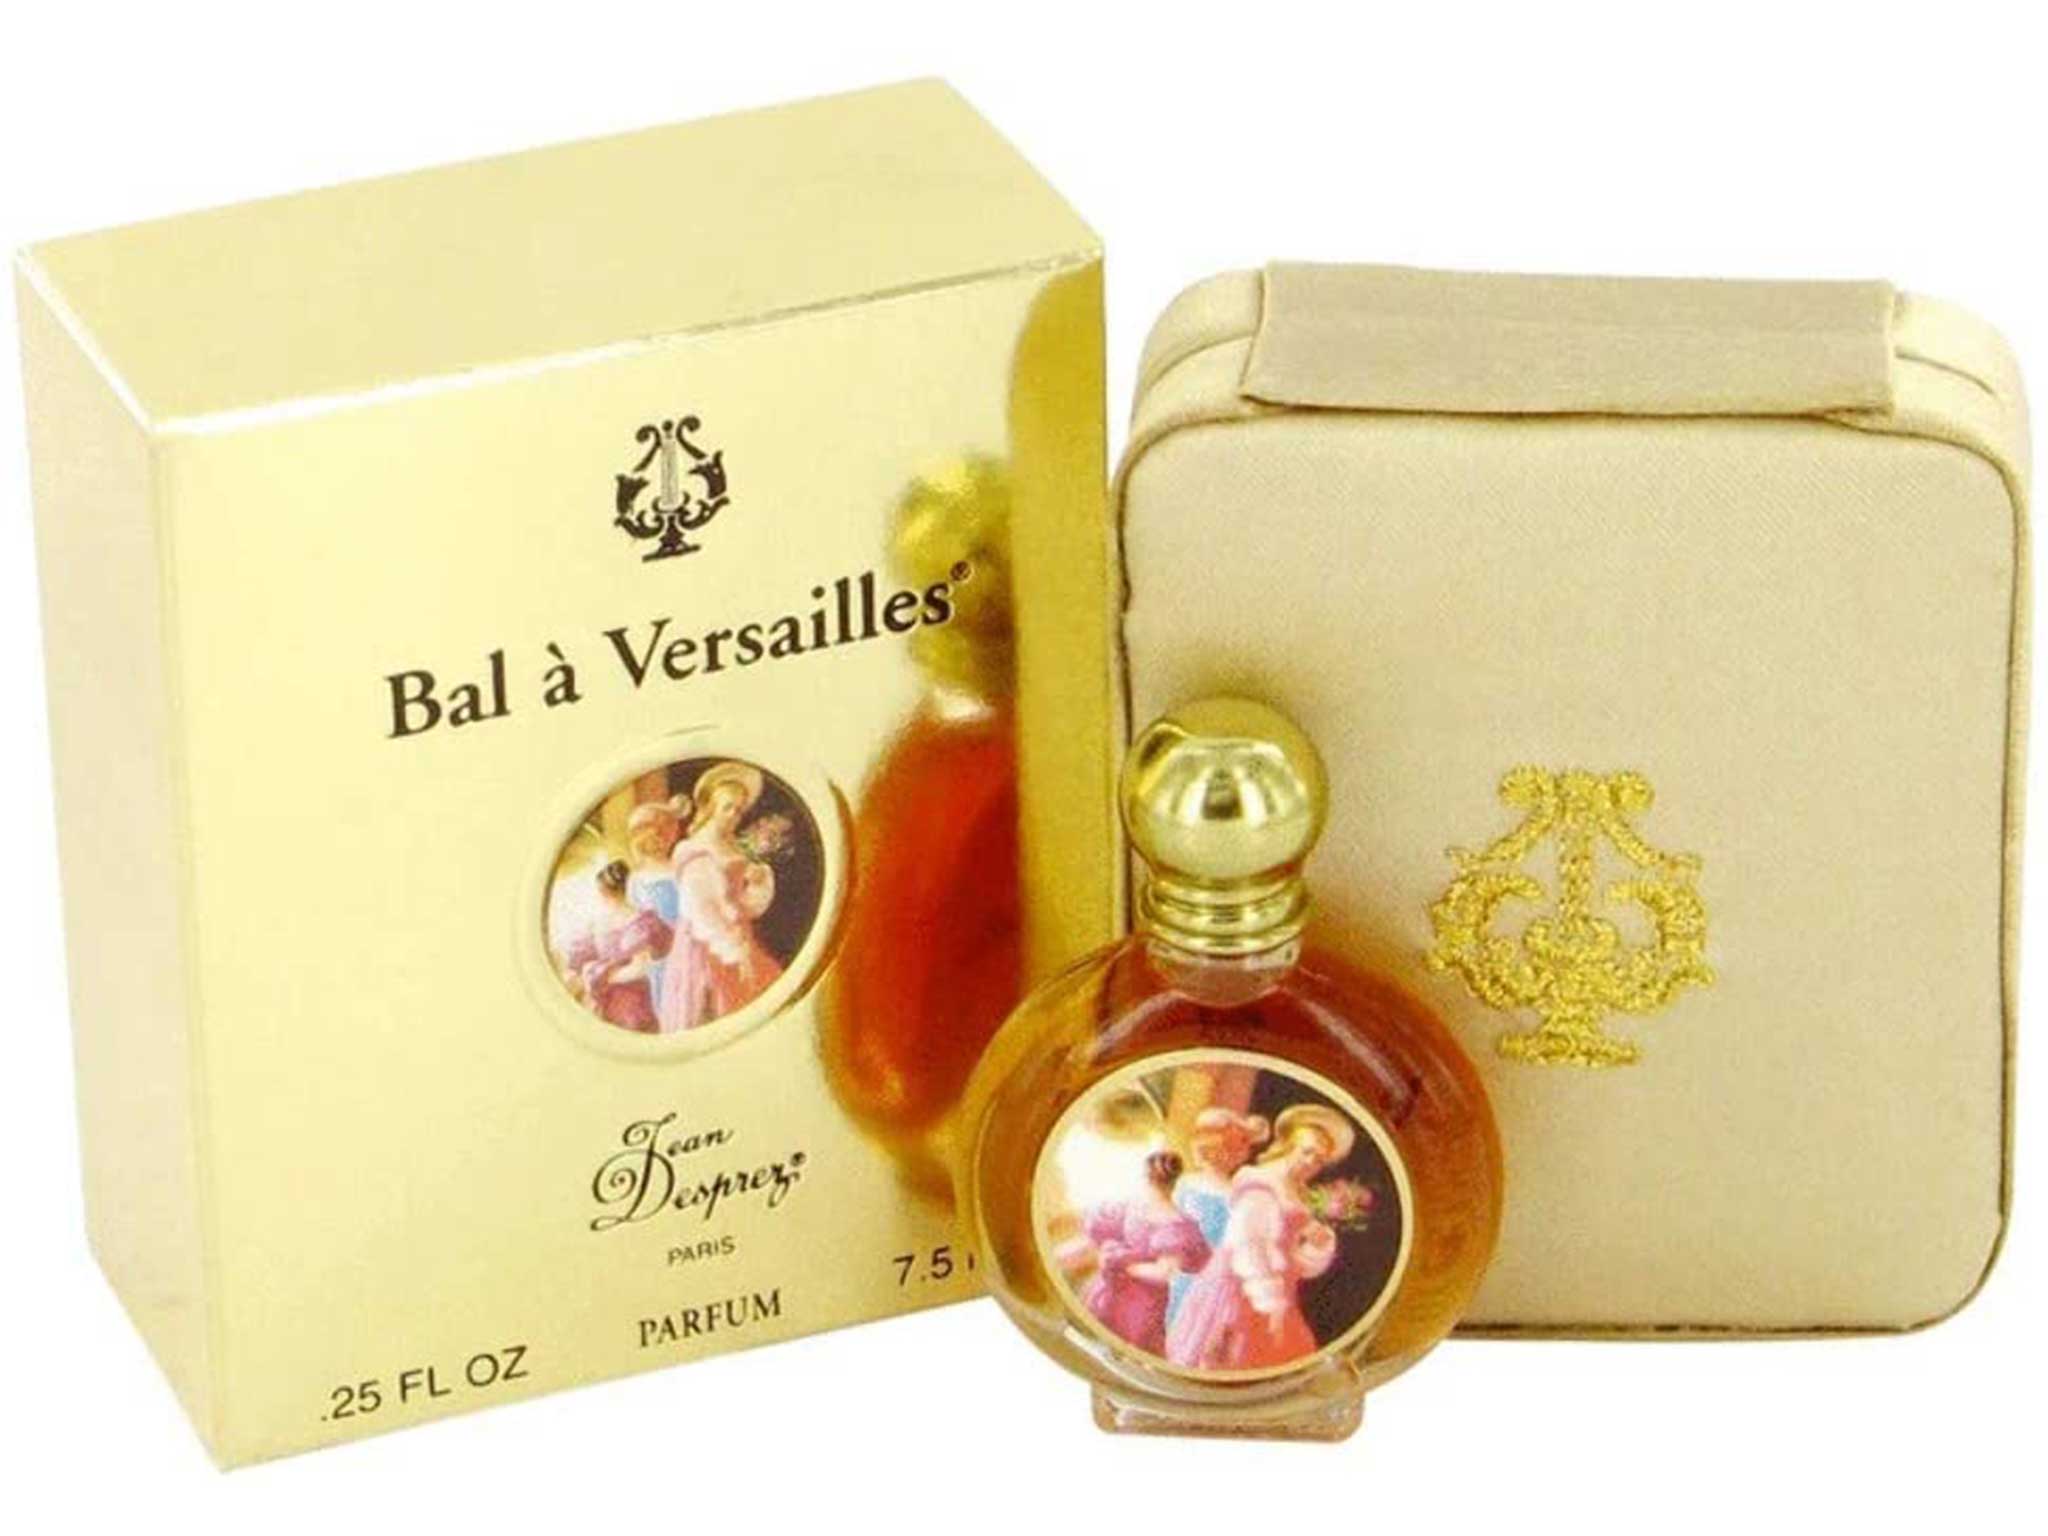 bal-a-versailles-perfume-amazon.jpg